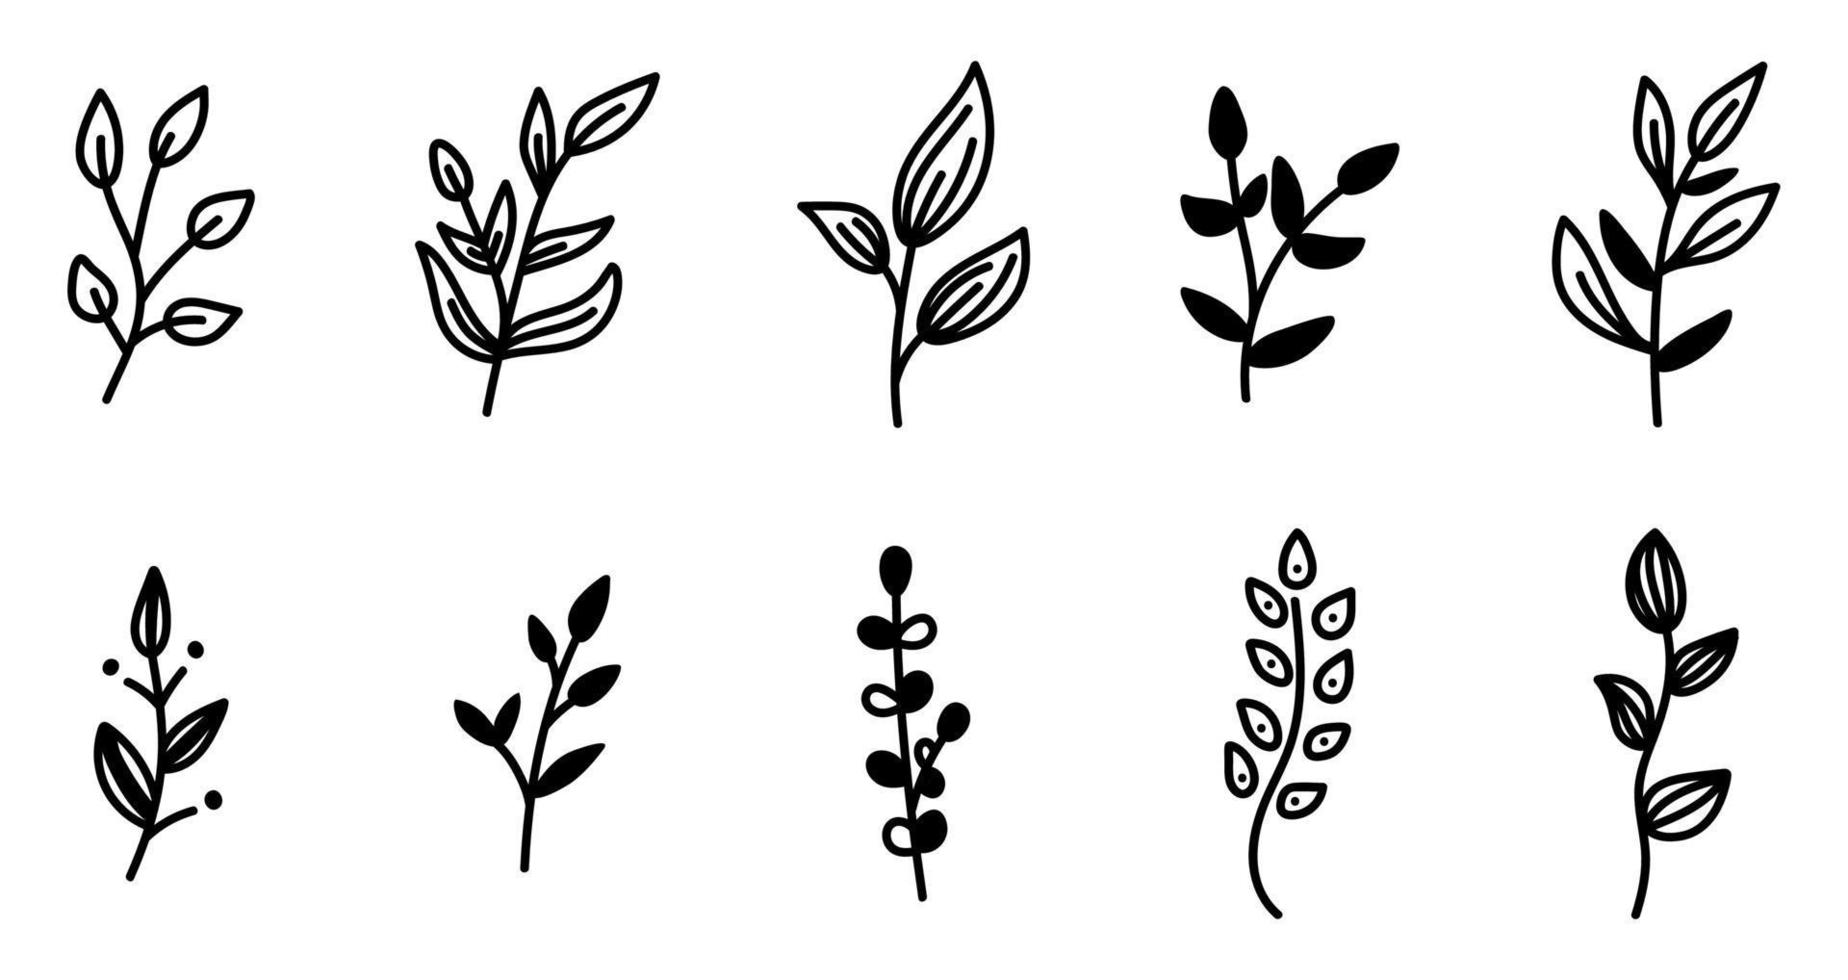 uppsättning doodle grenar med blad dekorativa element. botanisk vektorillustration design, isolerade handritade svarta element. vektor